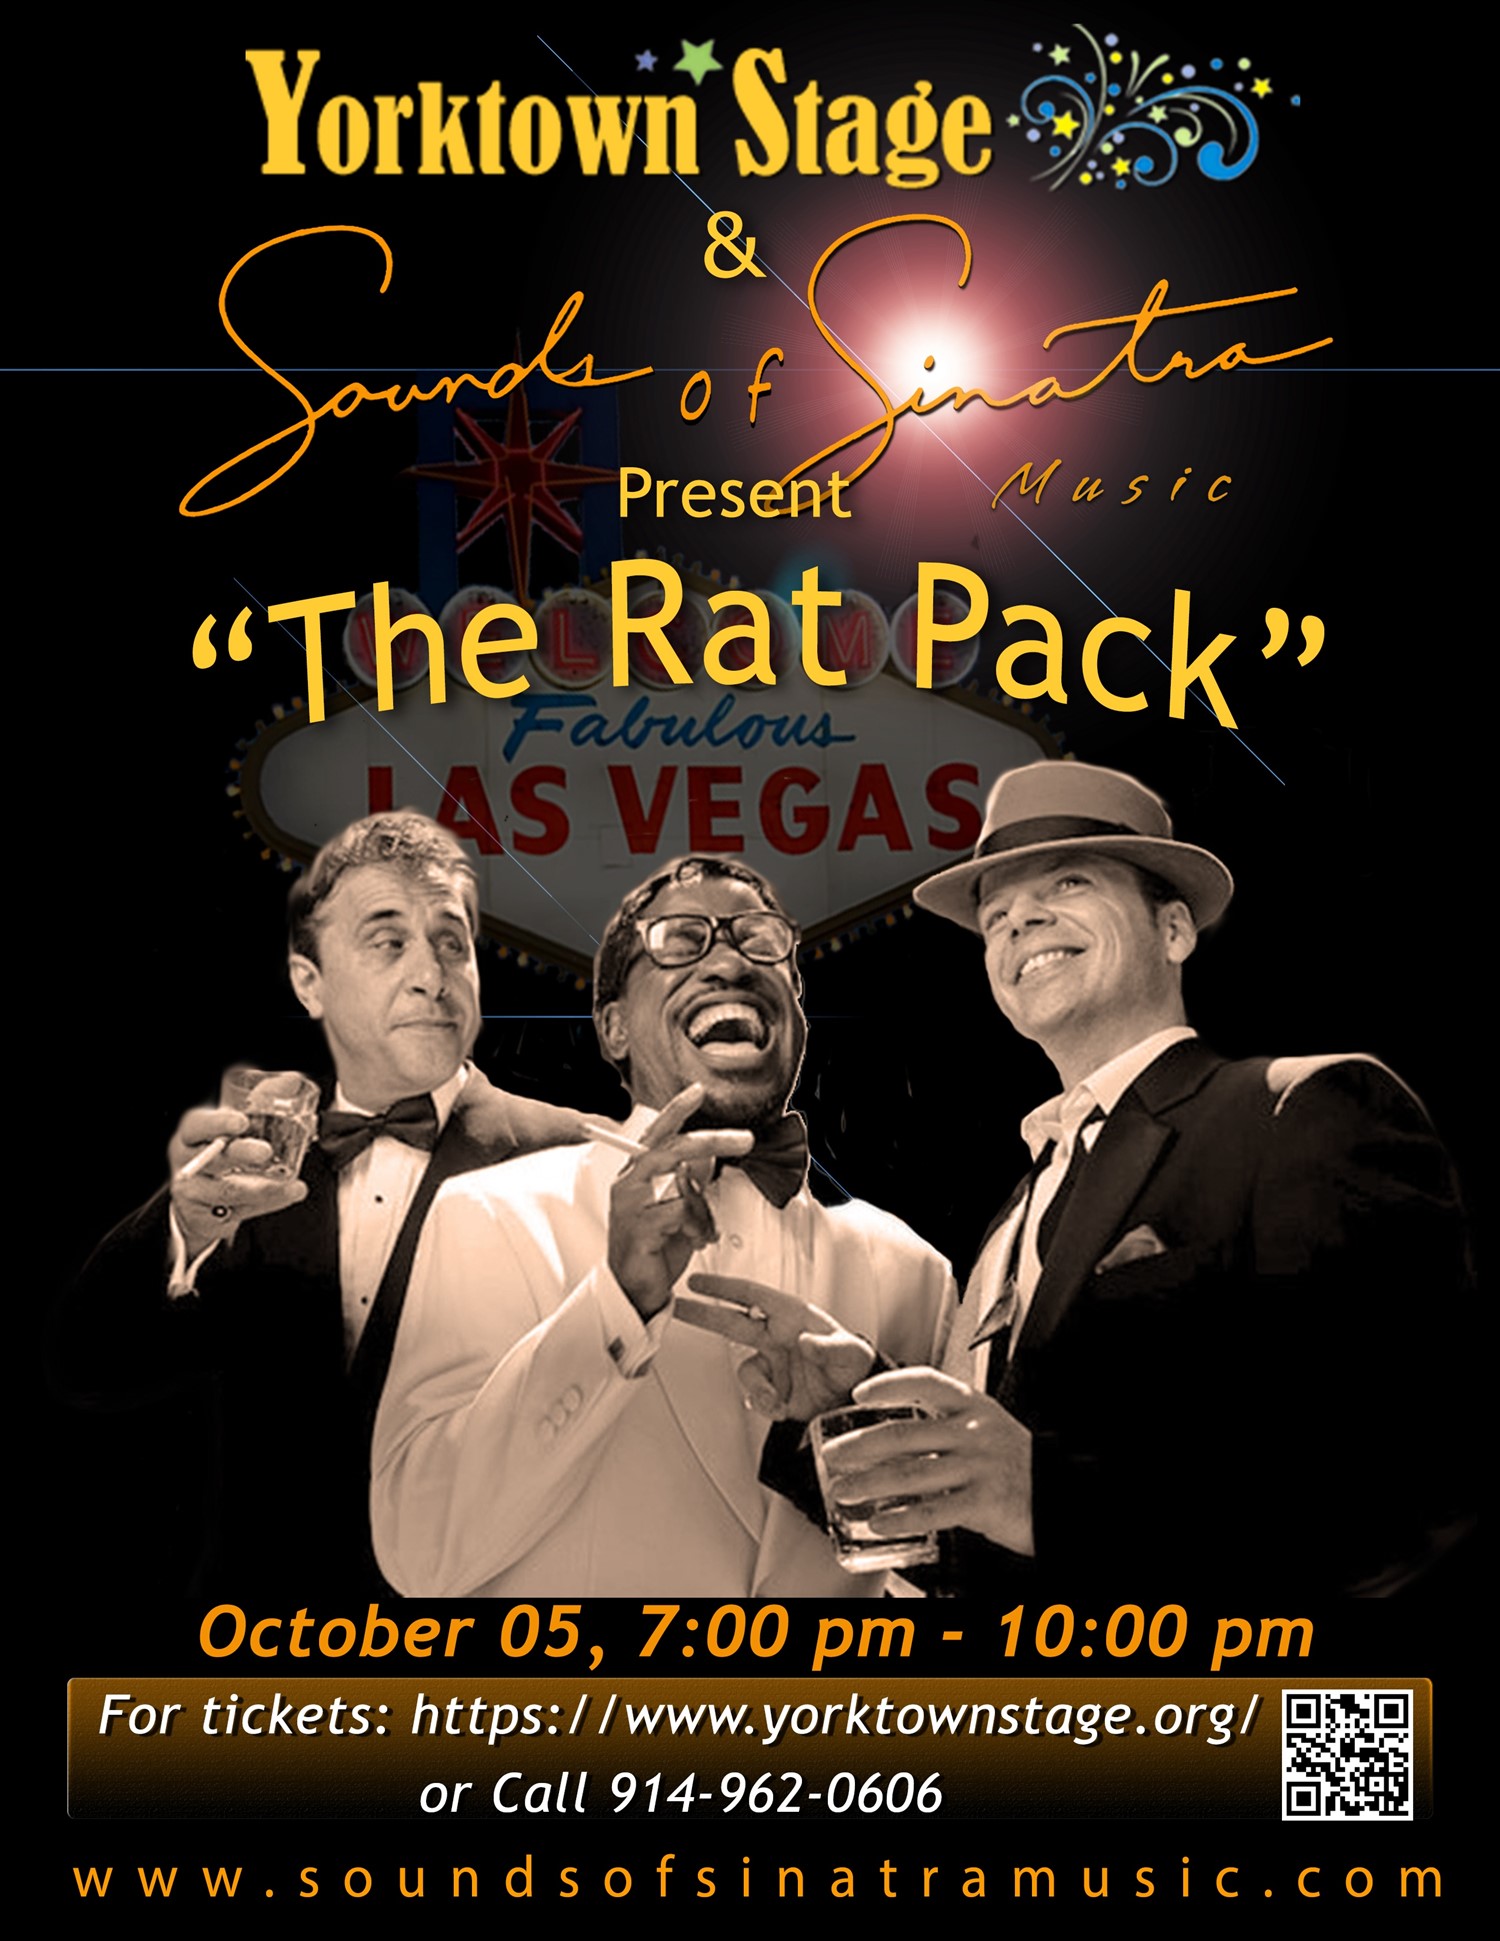 The Rat Pack Is Back Sounds of Sinatra on oct. 05, 19:00@Yorktown Stage 2023 - Choisissez un siège,Achetez des billets et obtenez des informations surYorktown Stage 